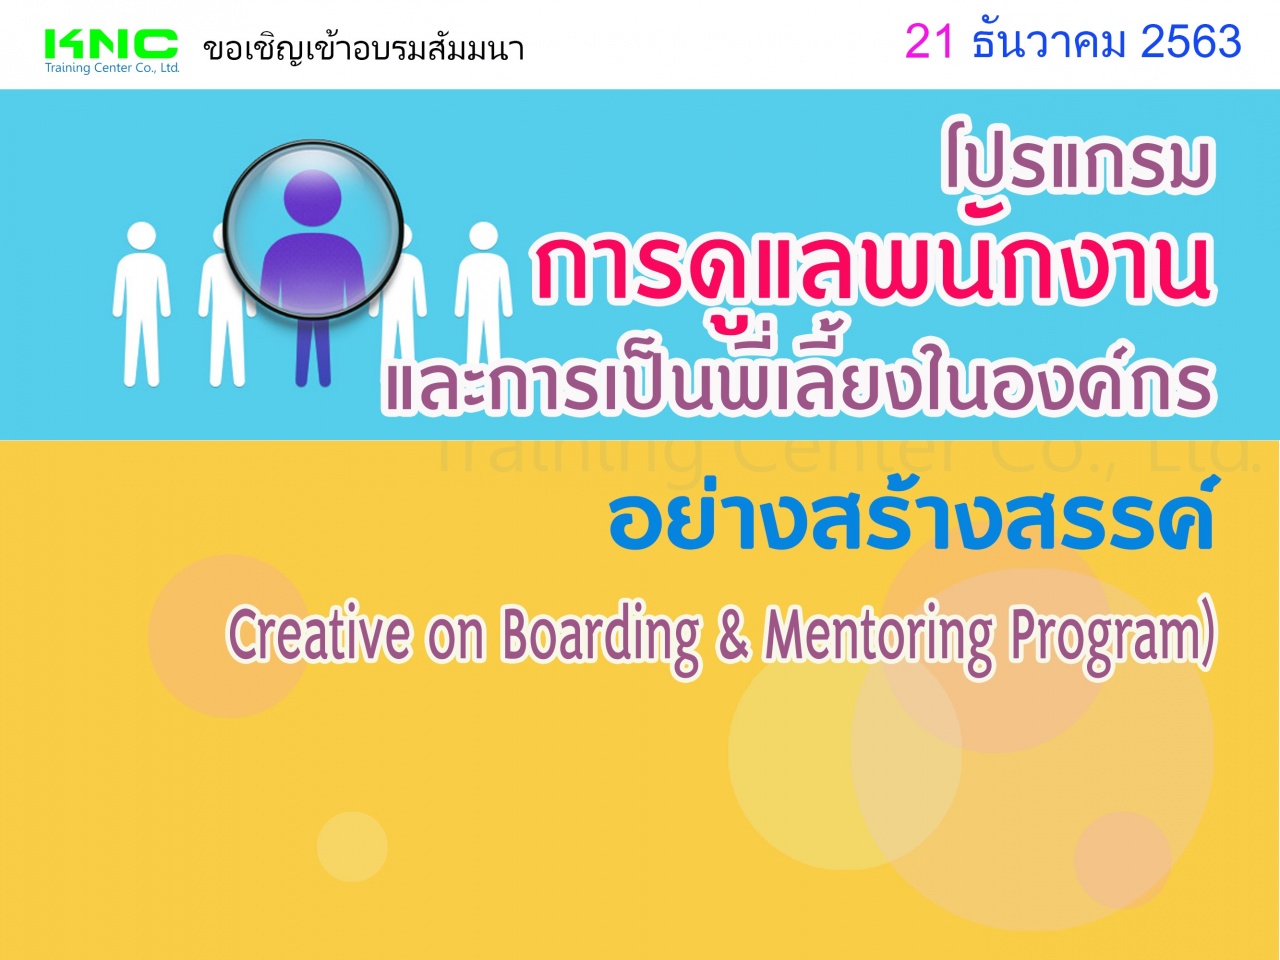 โปรแกรมการดูแลพนักงานและการเป็นพี่เลี้ยงในองค์กรอย่างสร้างสรรค์ (Creative on Boarding & Mentoring Program)